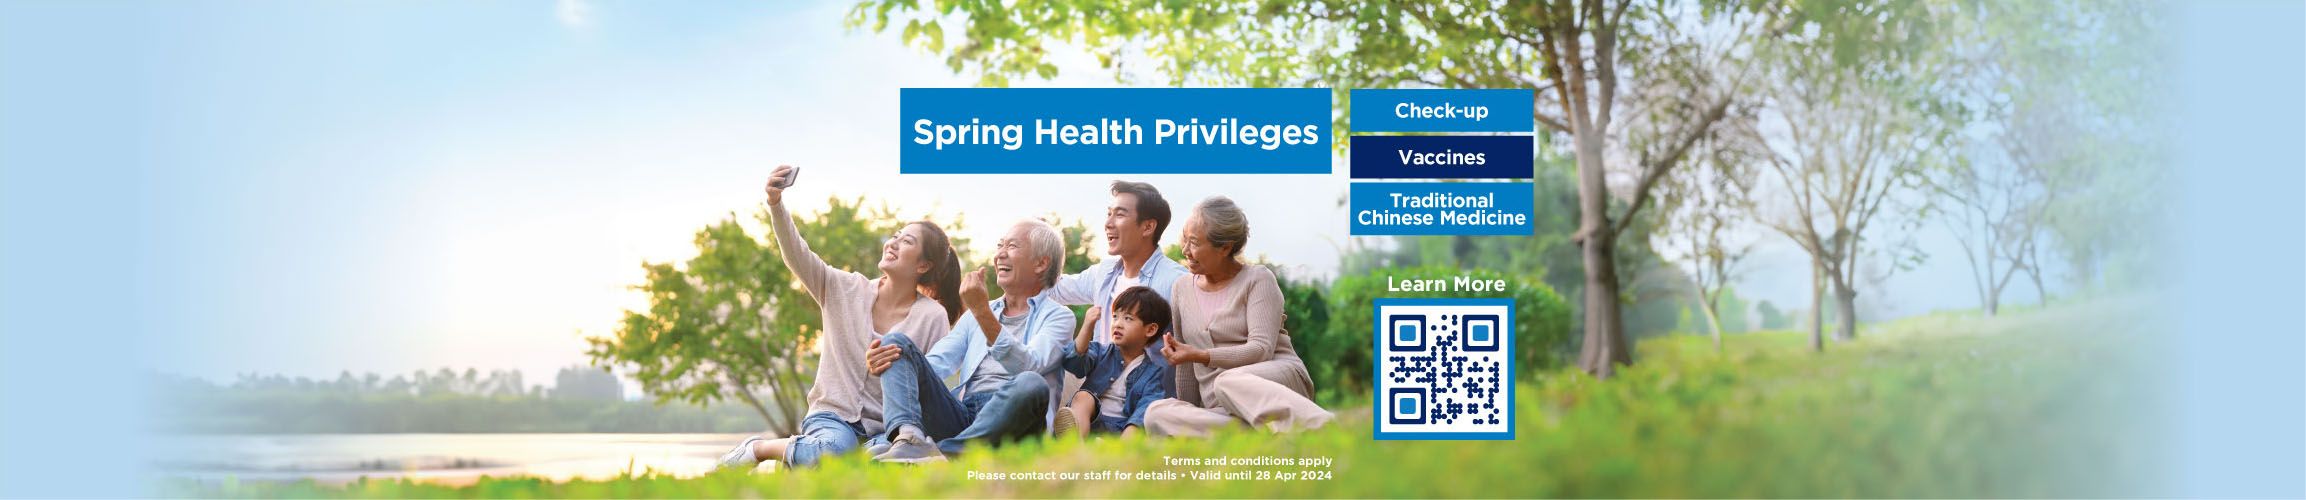 Spring health check promotion offer_EN